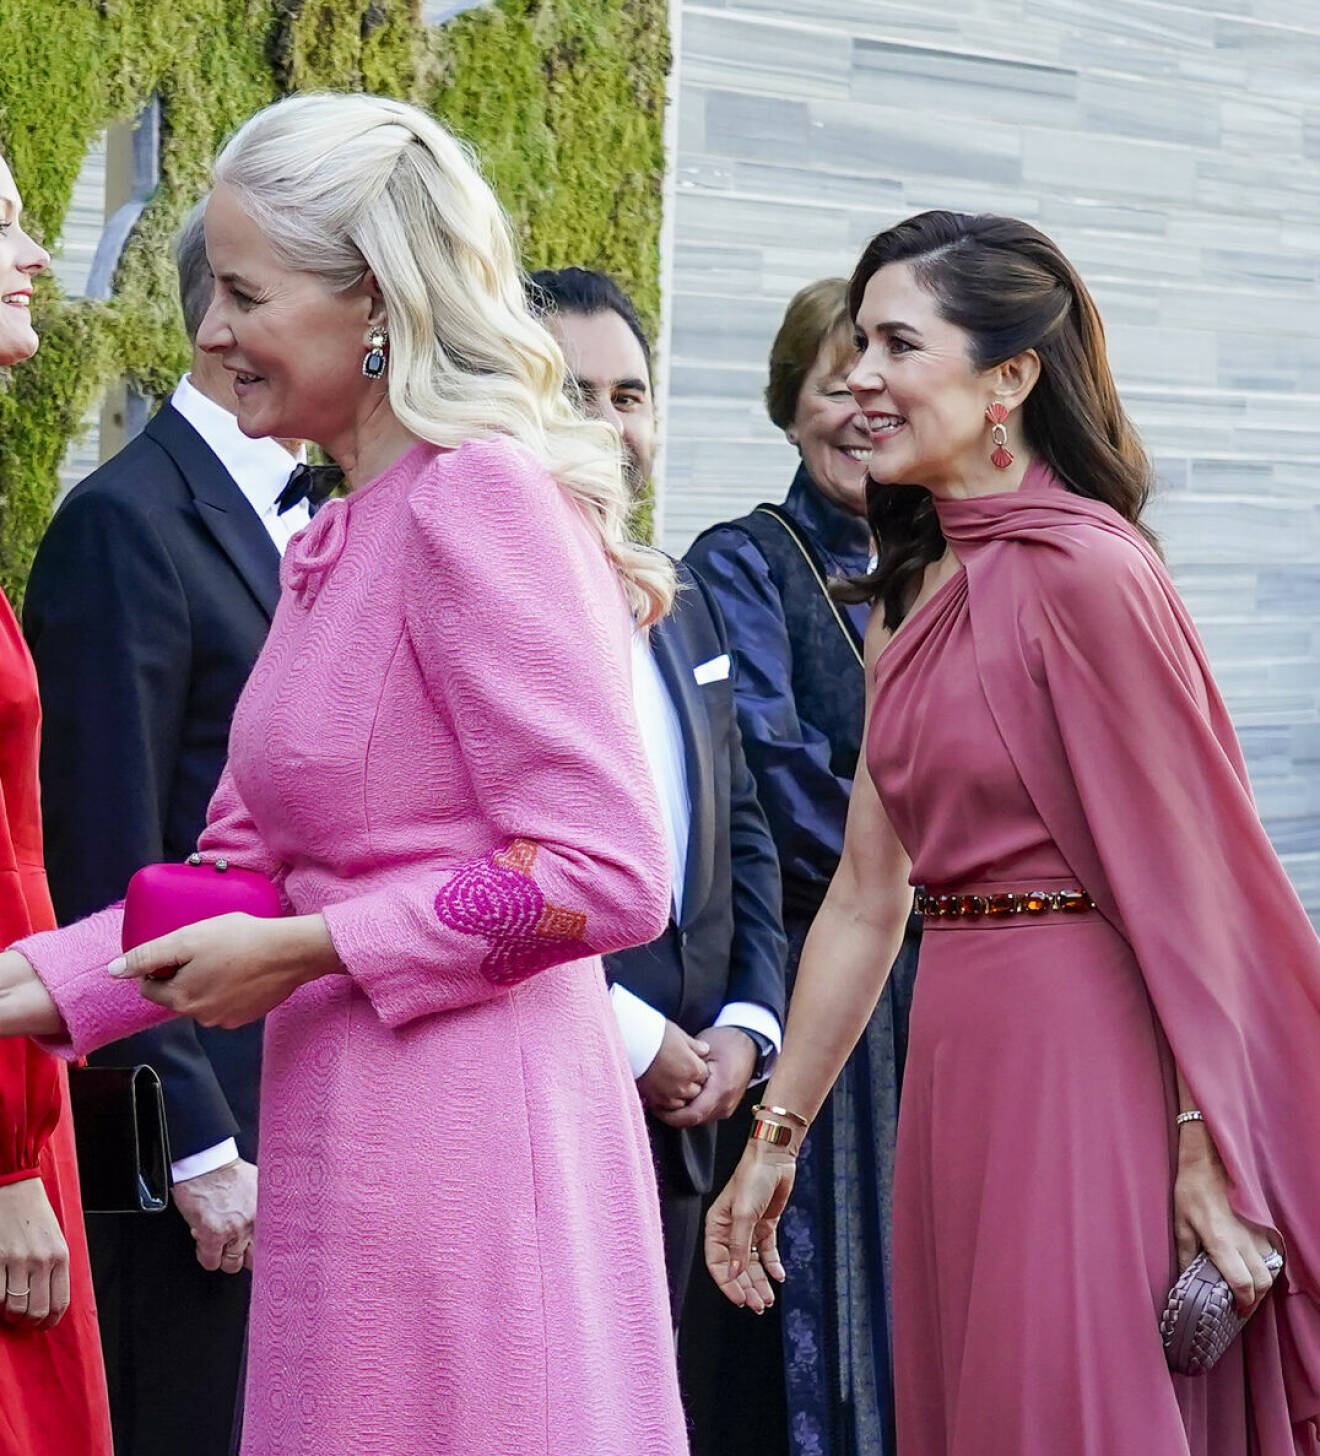 Kronprinsessan Mette-Marit och kronprinsessan Mary vid invigningen av Nationalmuseet i Oslo